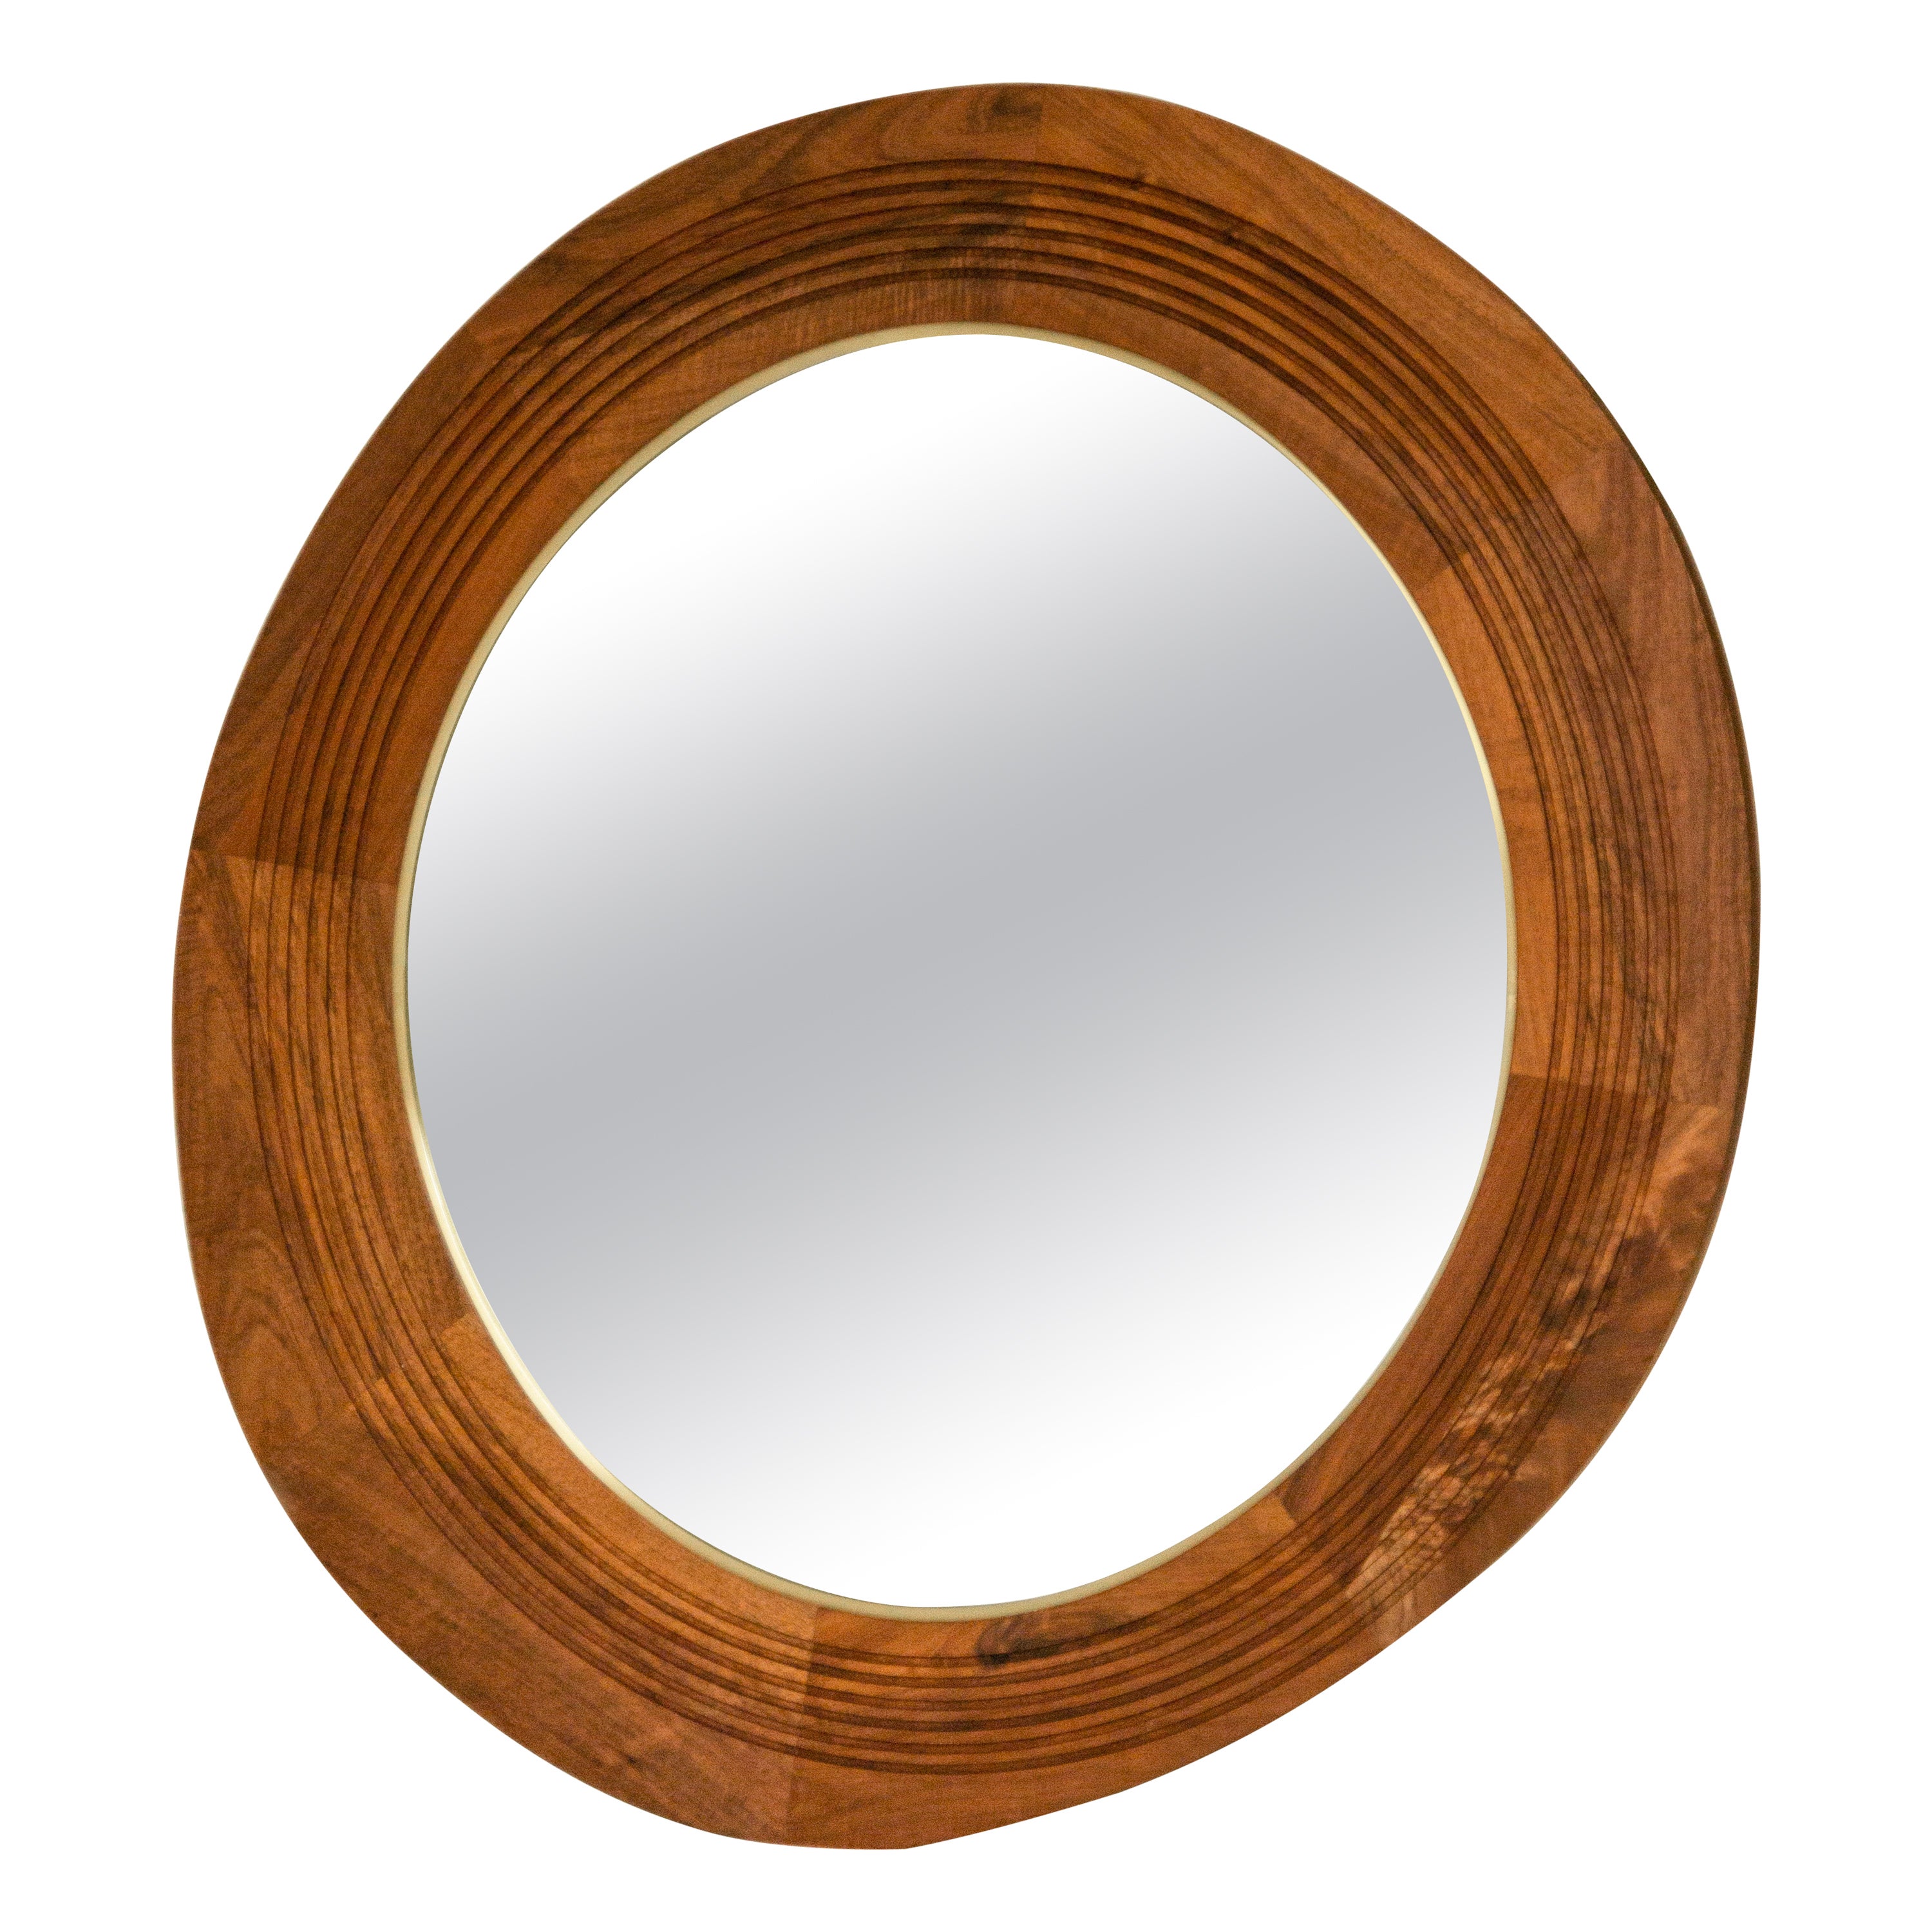 Joseph Oval Mirror Designed by Tana Karei